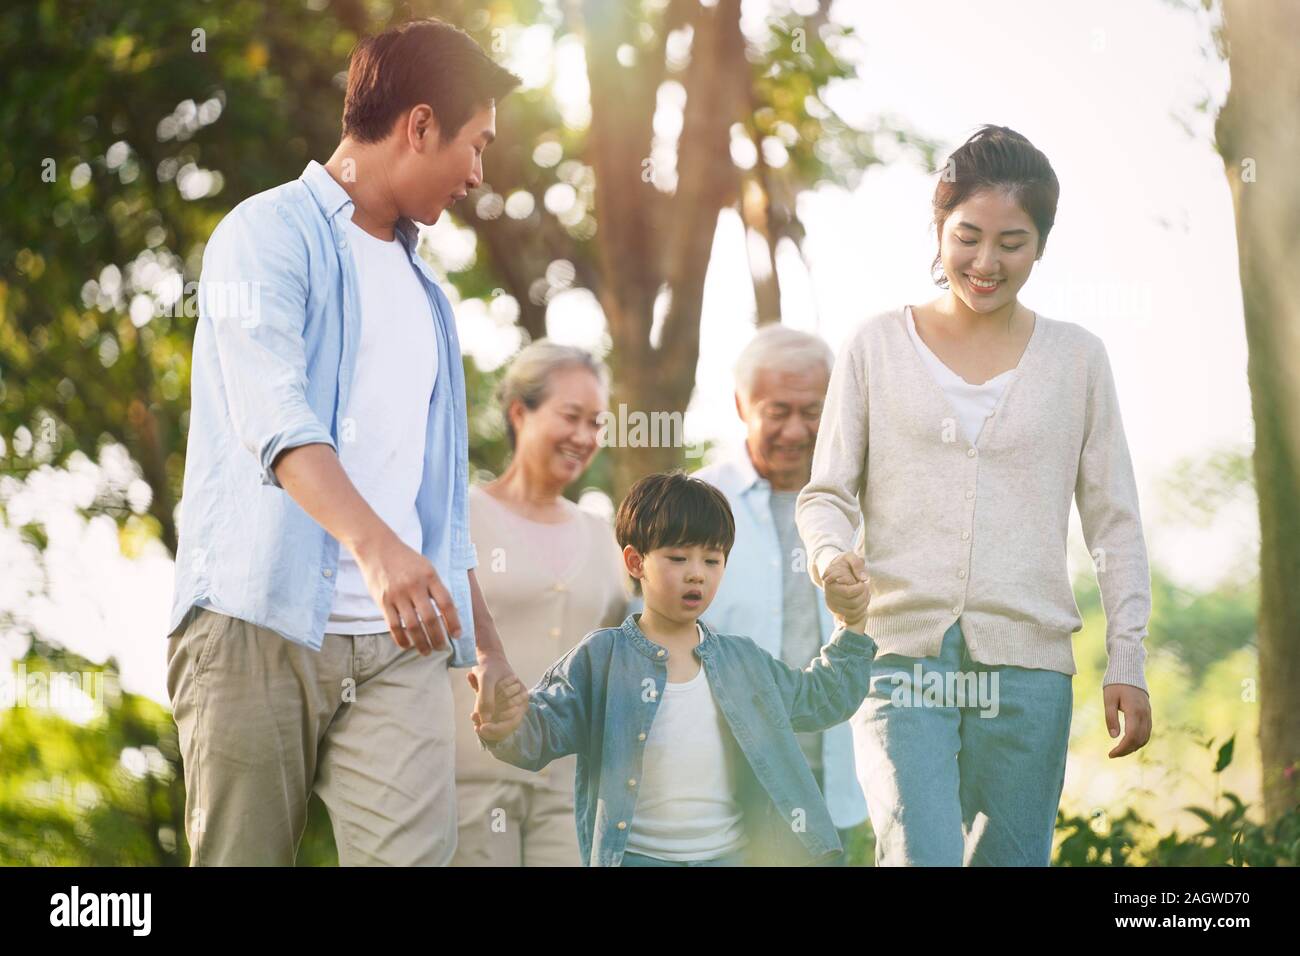 three generation happy asian family walking outdoors in park Stock Photo